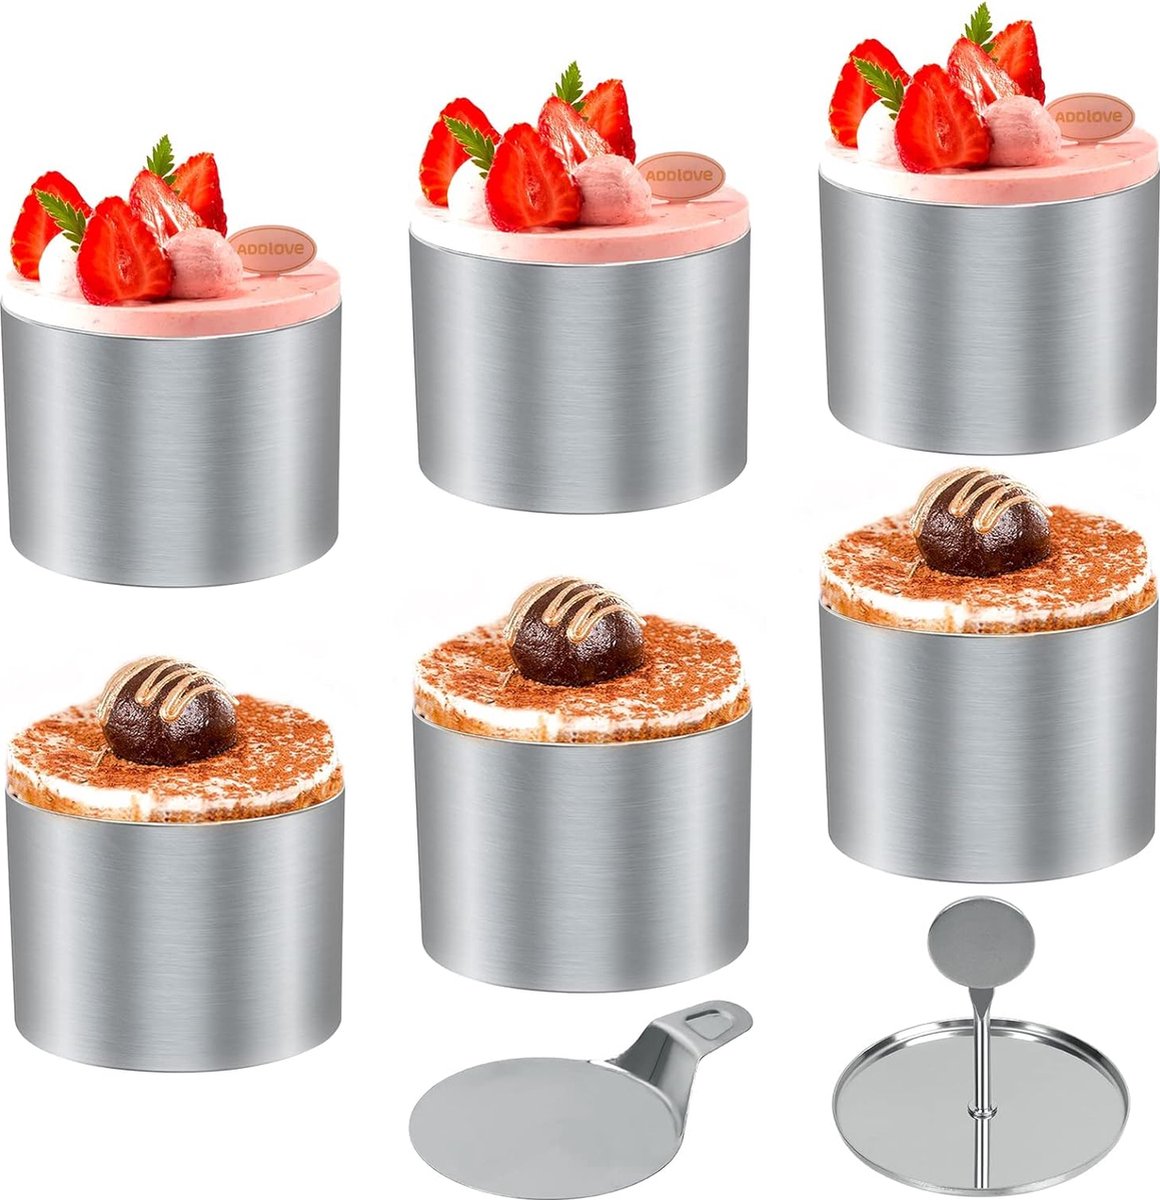 Set van 6 dessertringen en voedselringen, voedselringen, ringenset klein, roestvrijstalen mousseringen, diameter 7,5 cm ronde moussering, geschikte dessertring/voedselring voor desserts